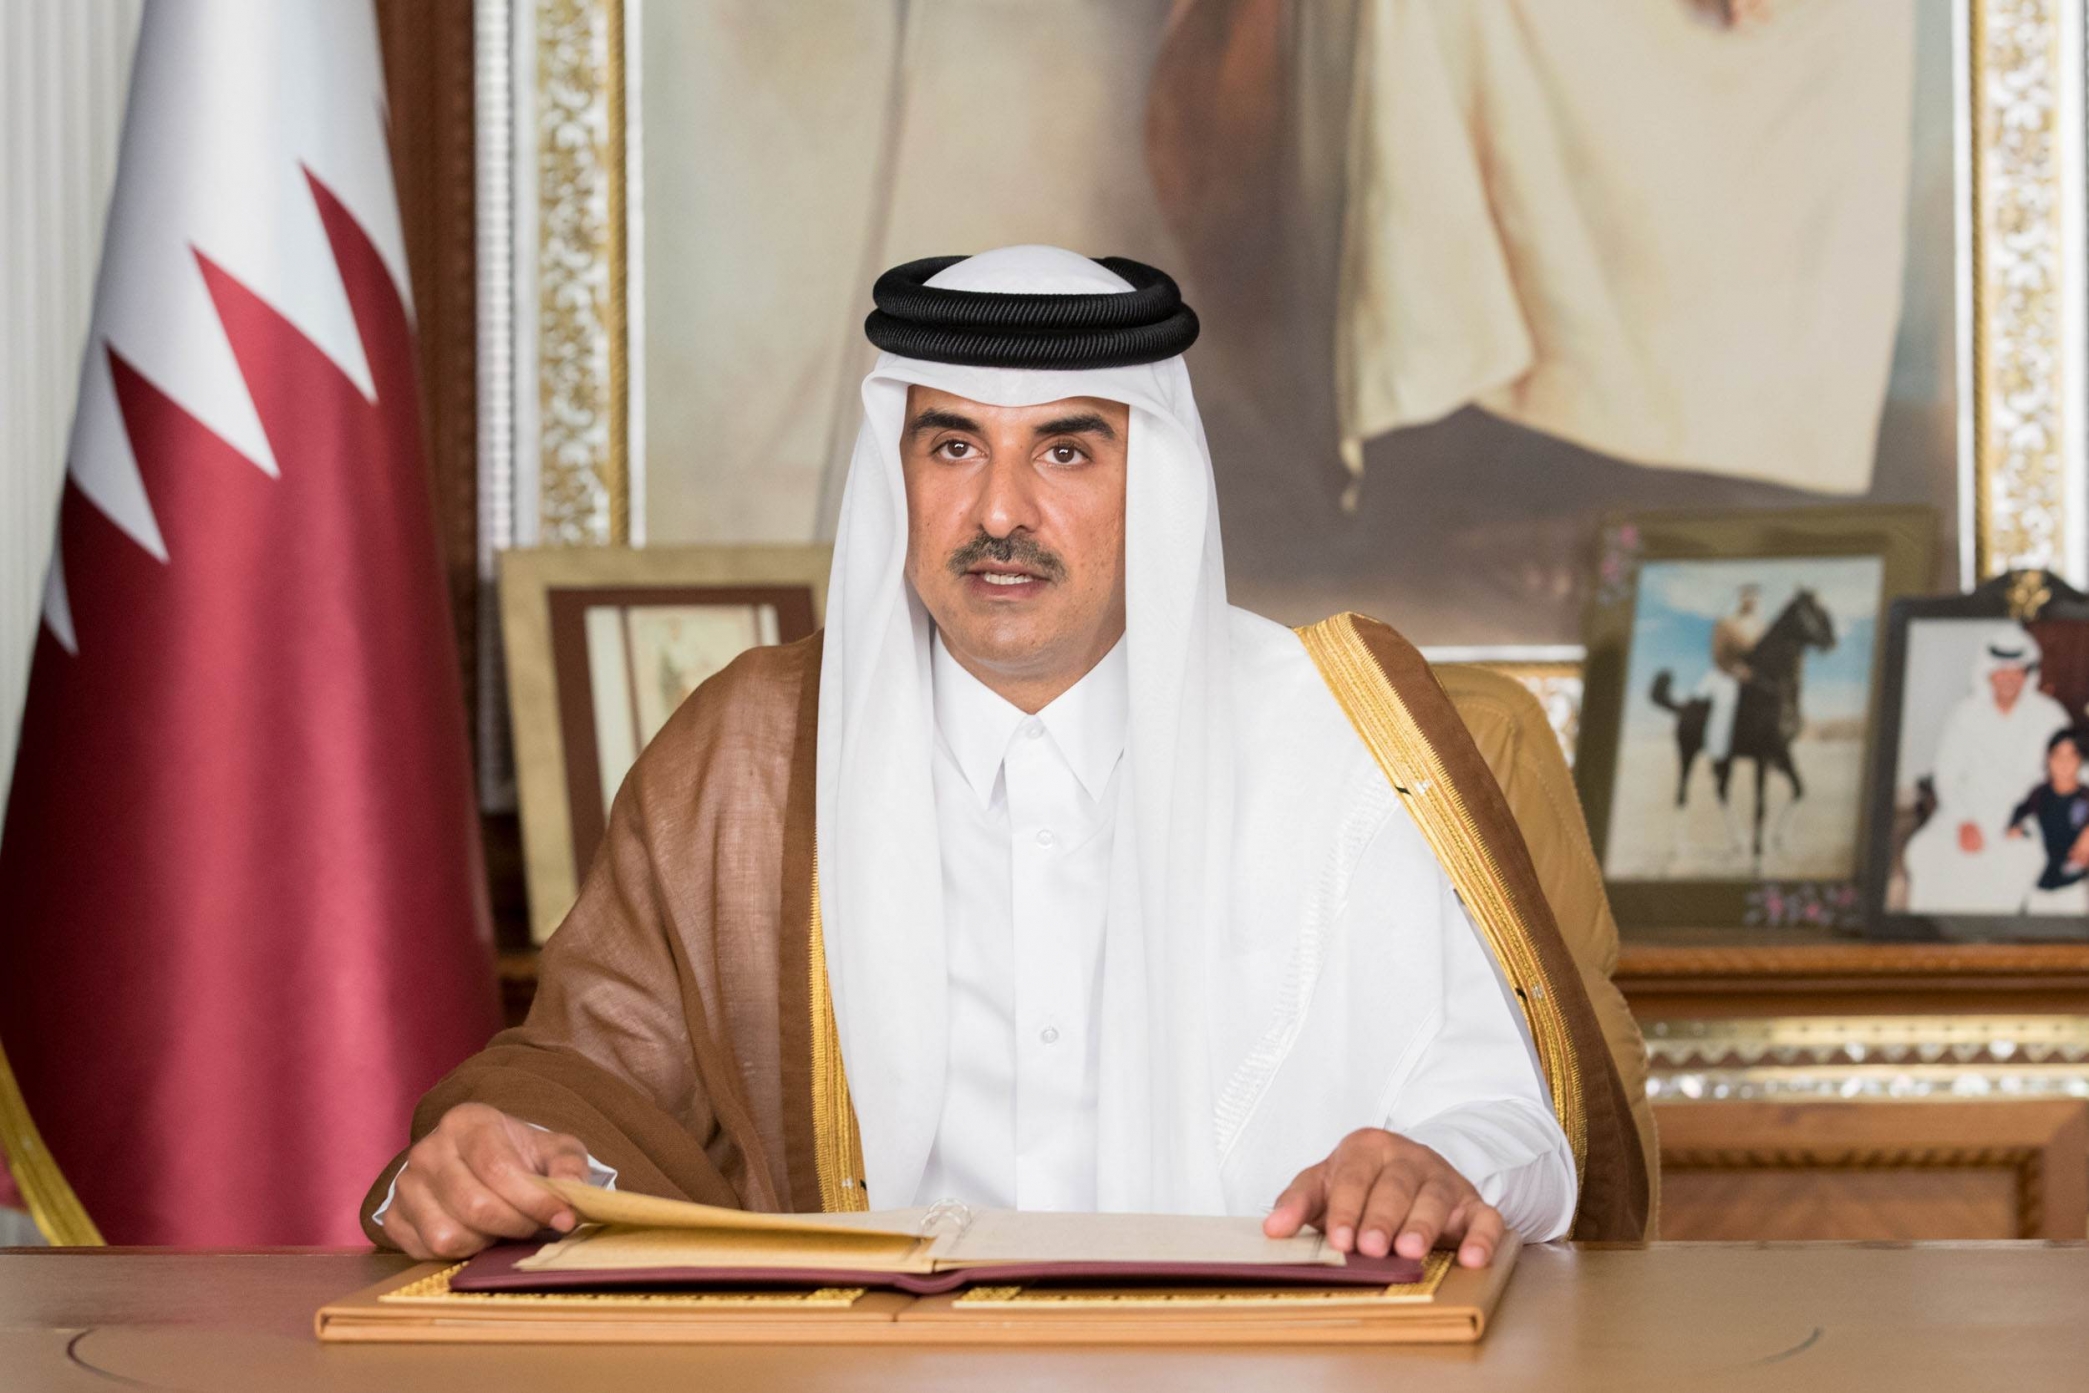 أمير قطر: نبارك لشعبنا يومنا الوطني وبطولة كروية استثنائية